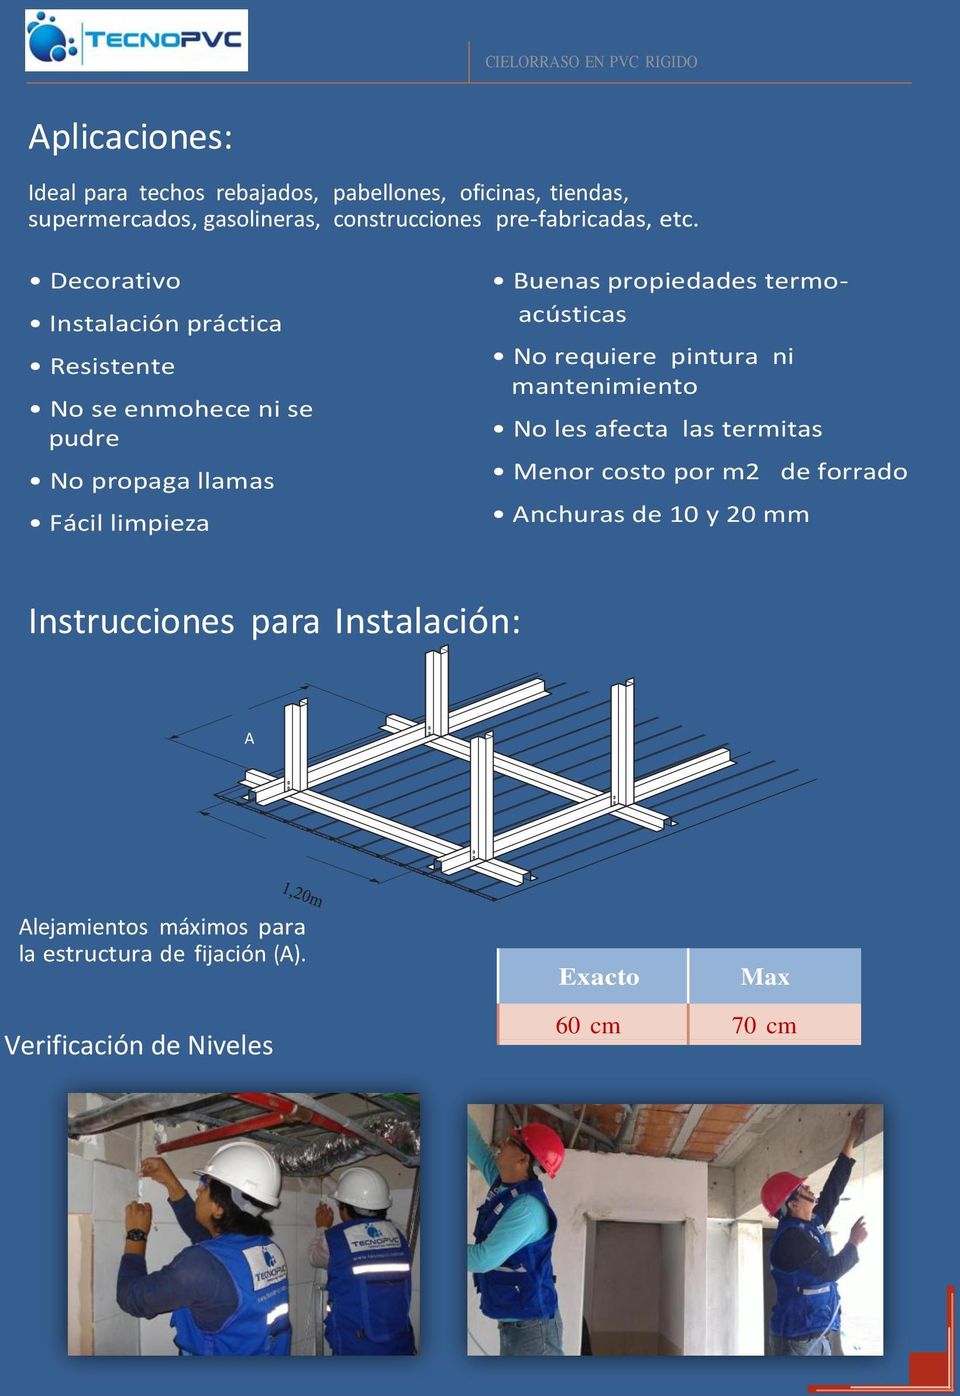 termoacústicas No requiere pintura ni mantenimiento No les afecta las termitas Menor costo por m2 de forrado Anchuras de 10 y 20 mm